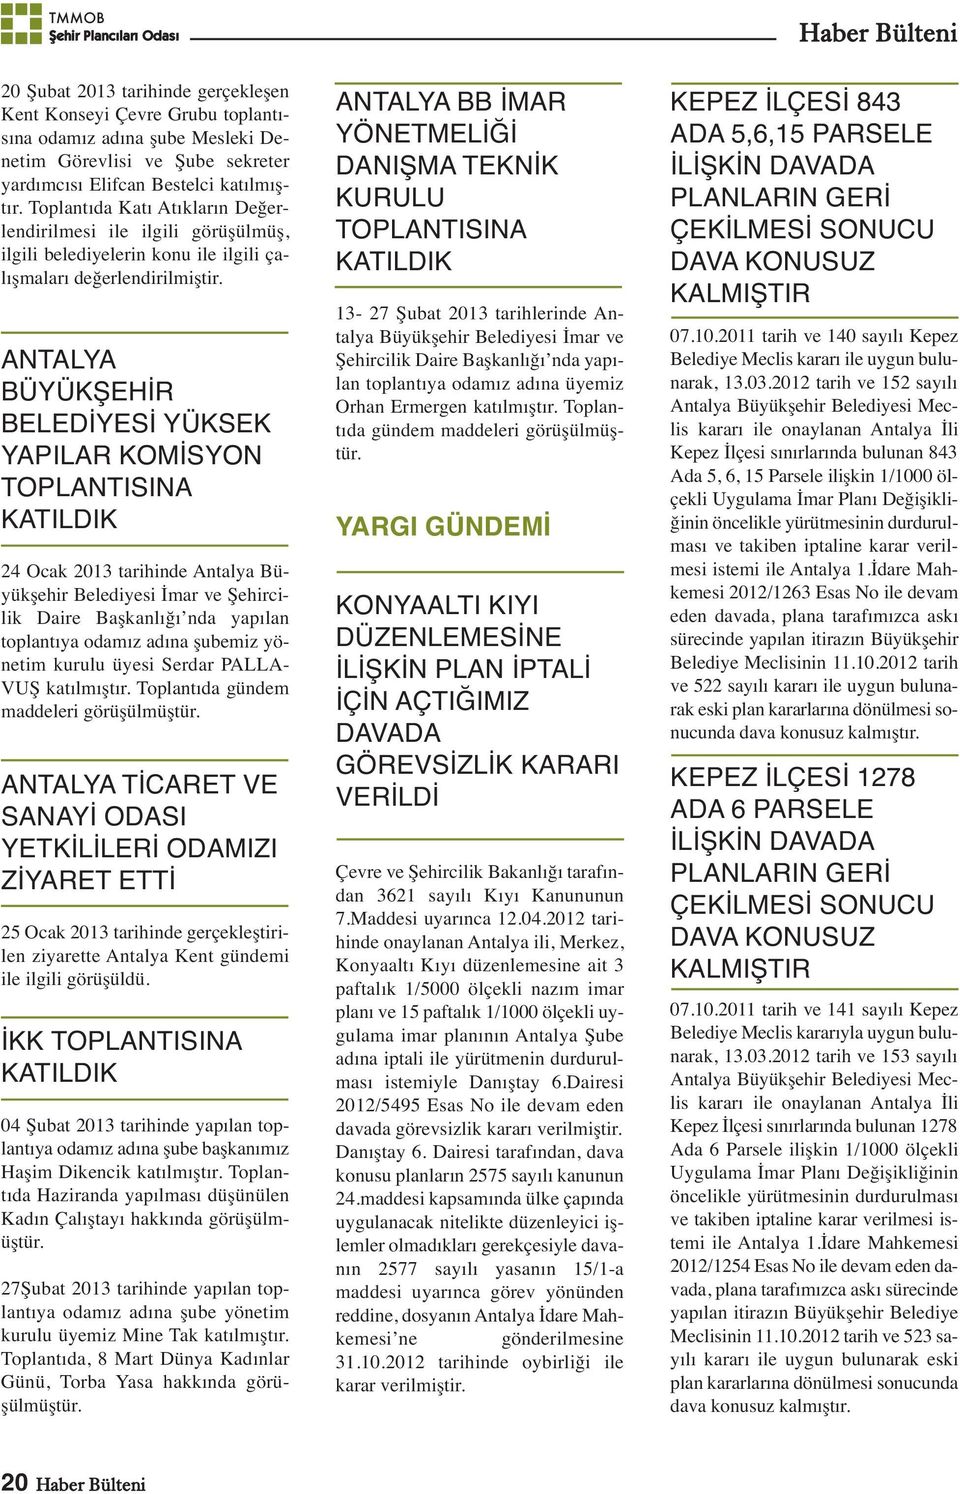 ANTALYA BÜYÜKŞEHİR BELEDİYESİ YÜKSEK YAPILAR KOMİSYON TOPLANTISINA 24 Ocak 2013 tarihinde Antalya Büyükşehir Belediyesi İmar ve Şehircilik Daire Başkanlığı nda yapılan toplantıya odamız adına şubemiz